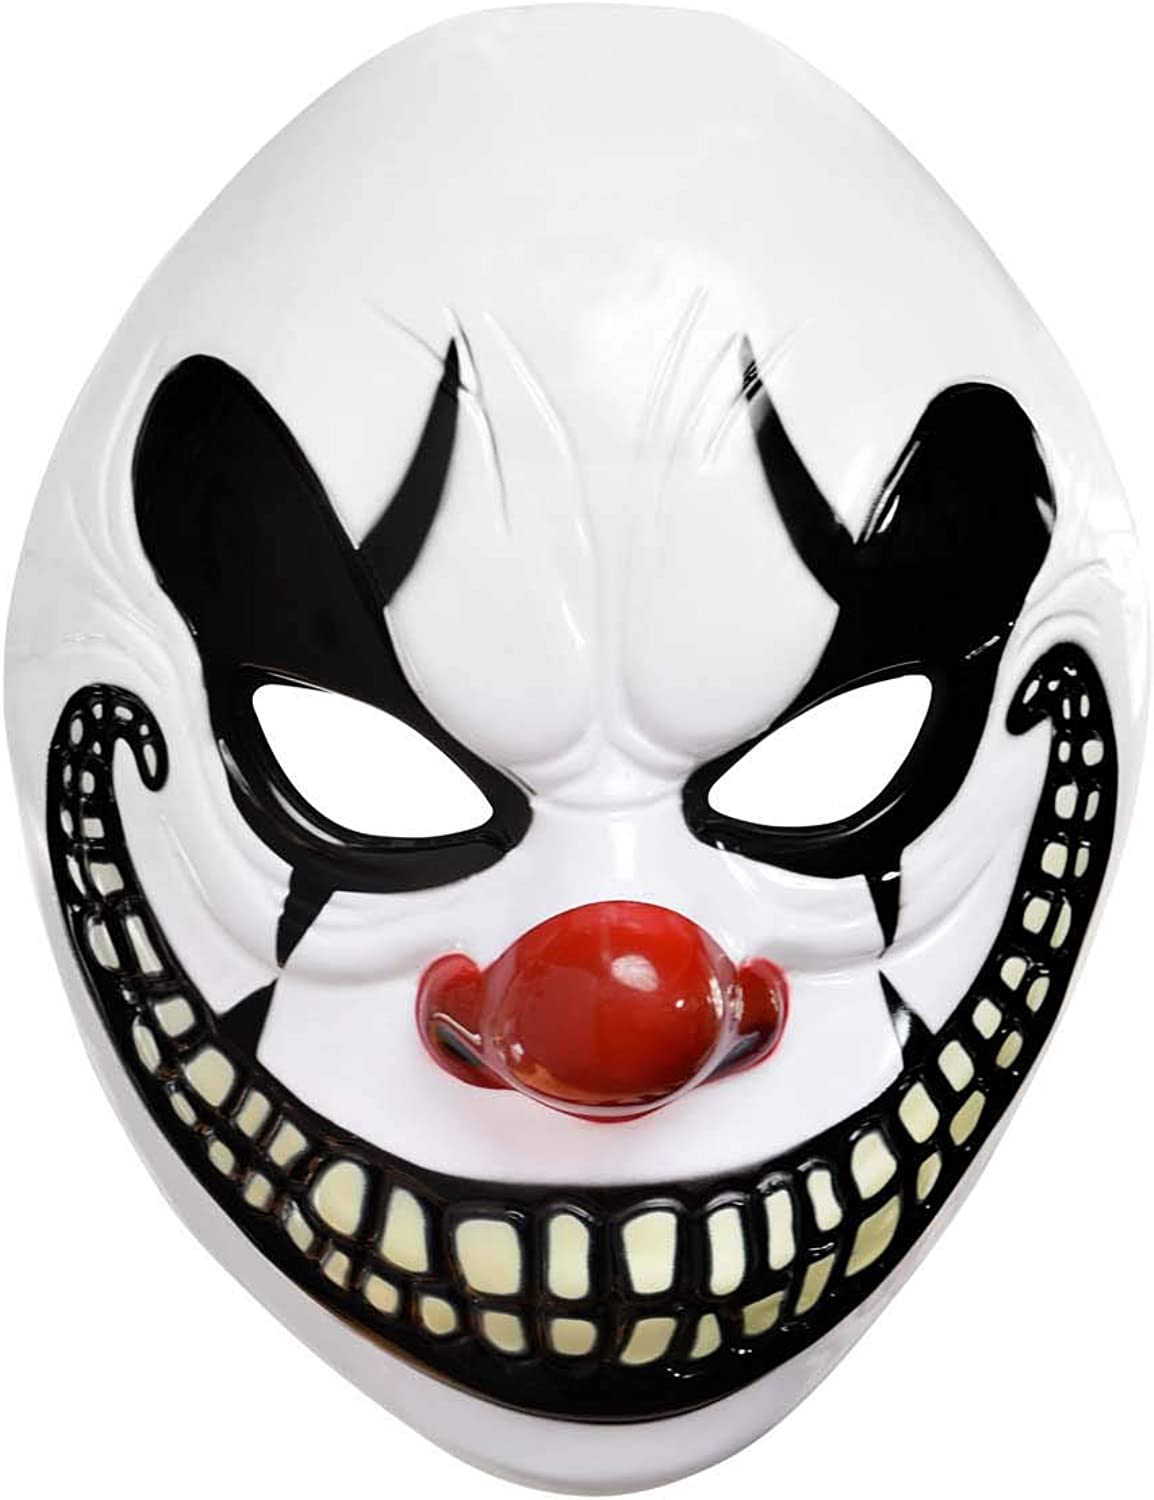 Freak Show Joker Maske 26x16 Cm (4172)